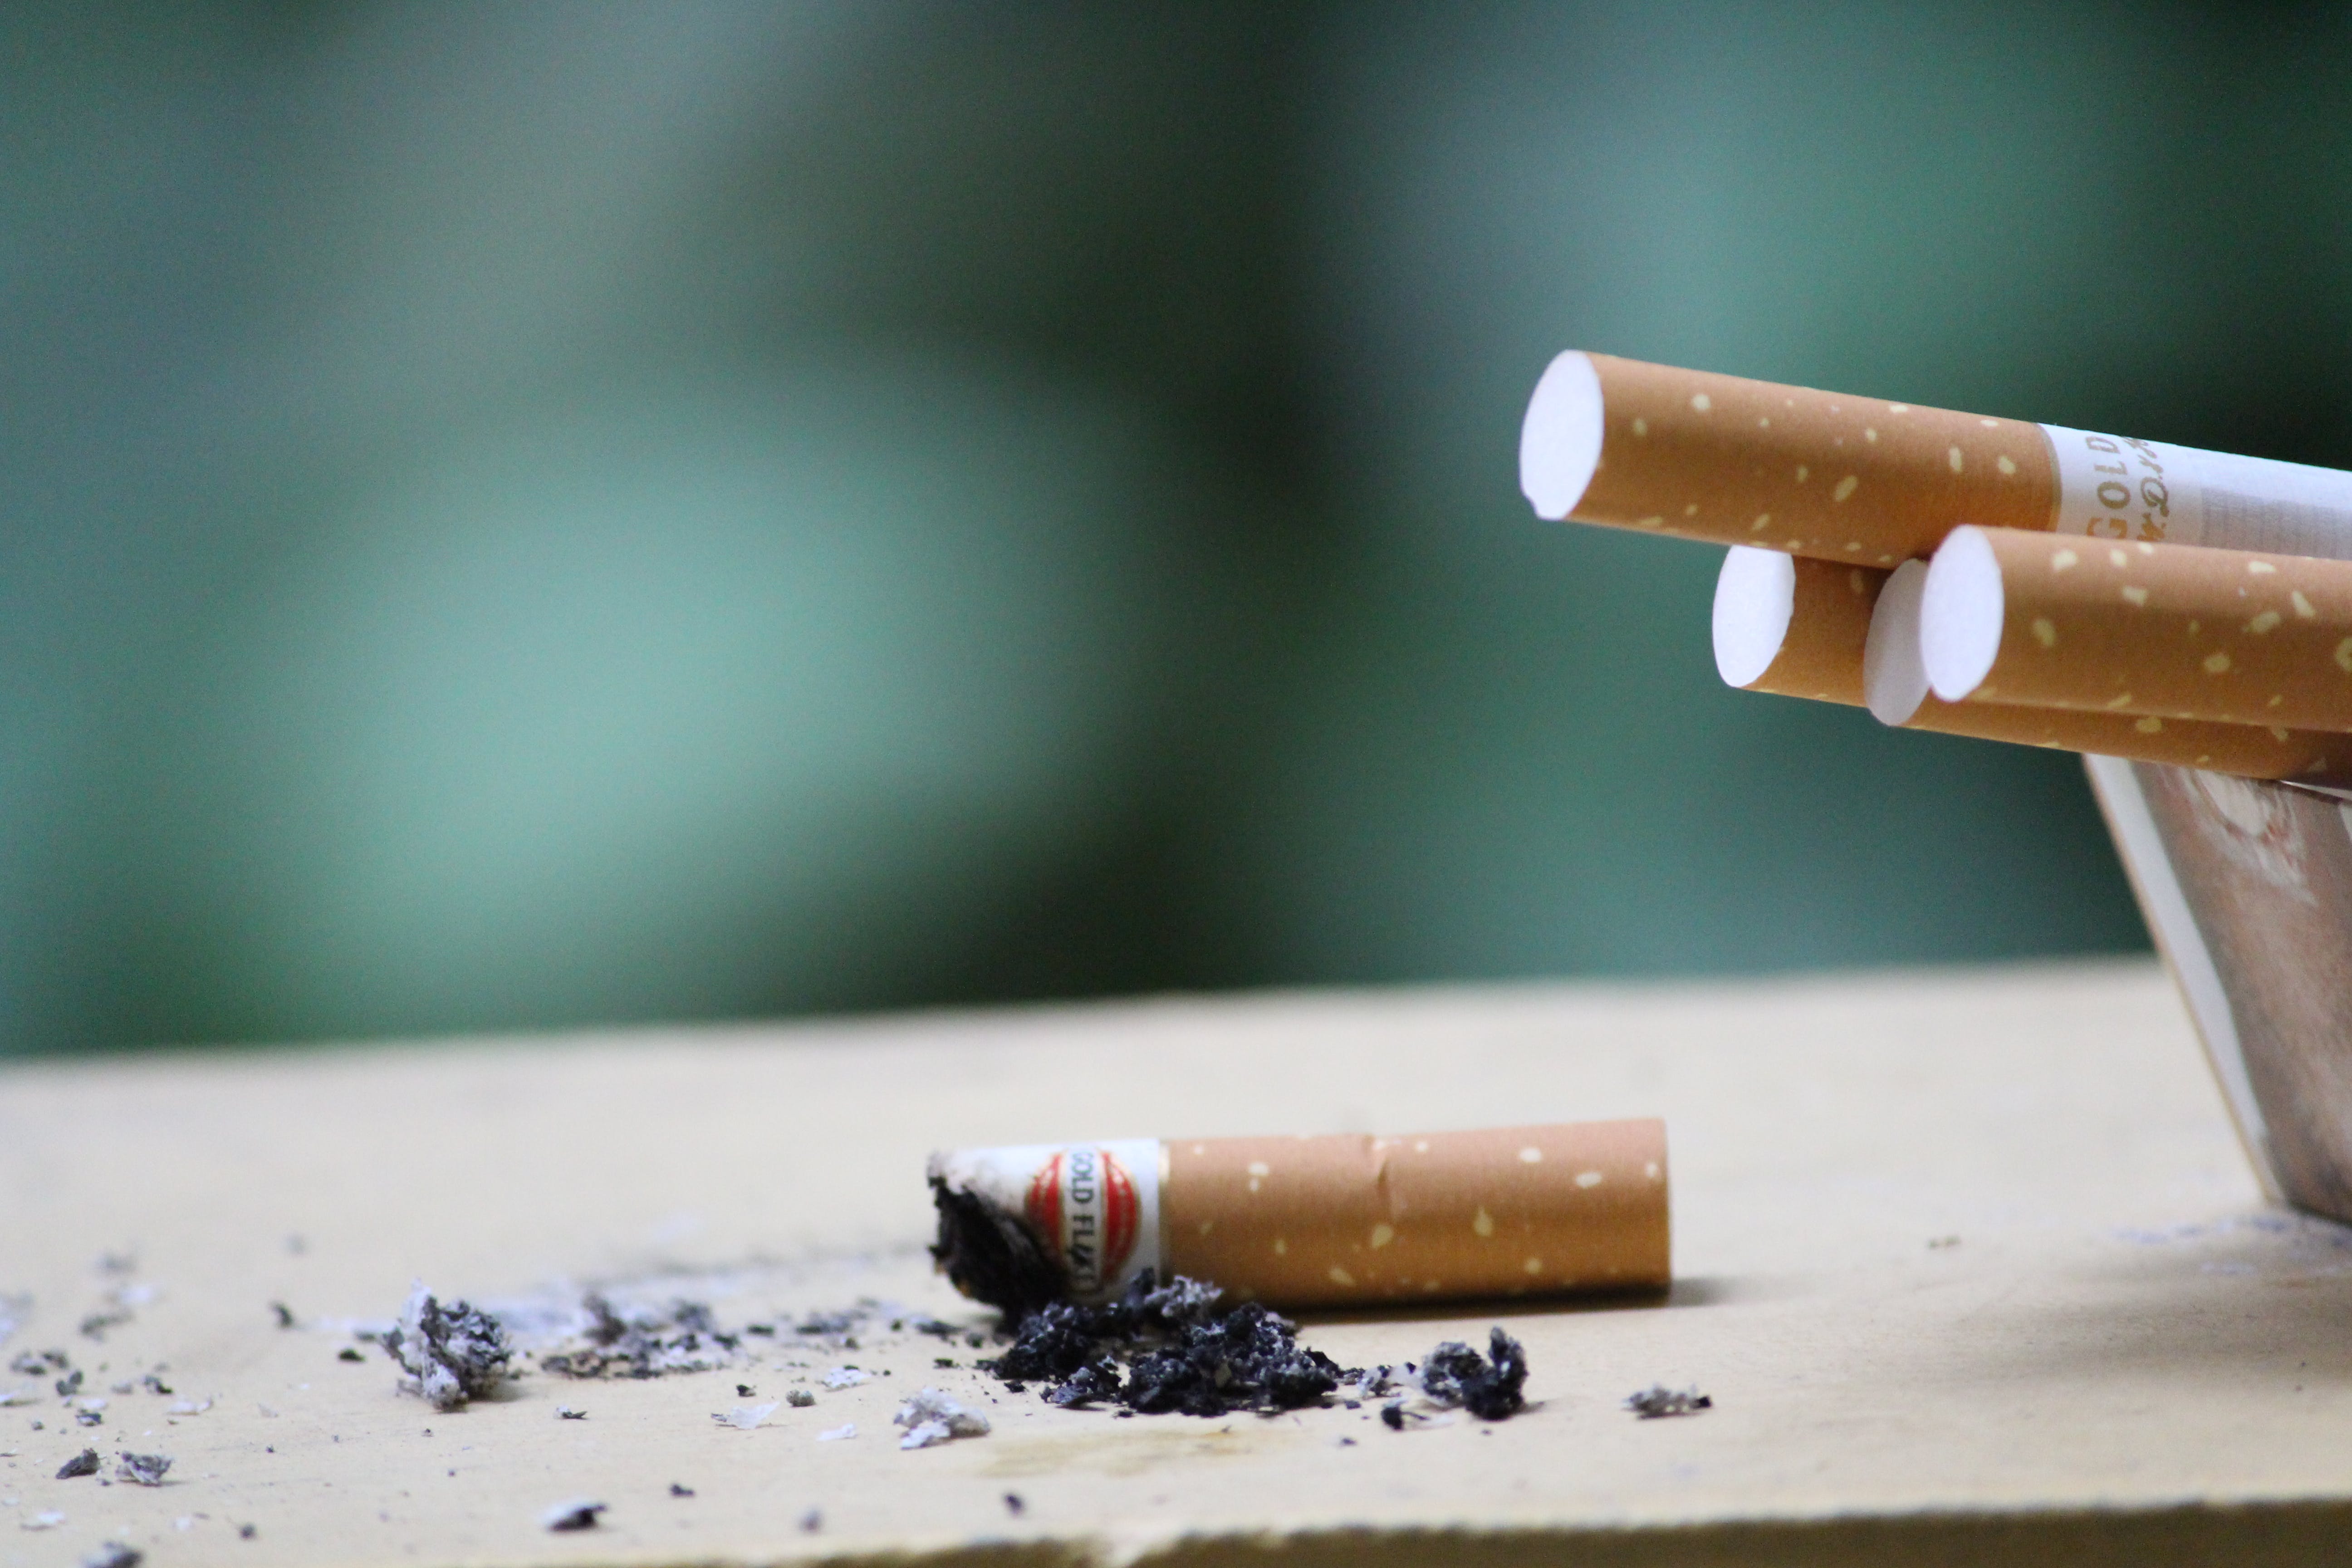 دنیا بھر میں تمباکو نوشی کرنے والوں کی تعداد میں کمی، عالمی ادارہ صحت